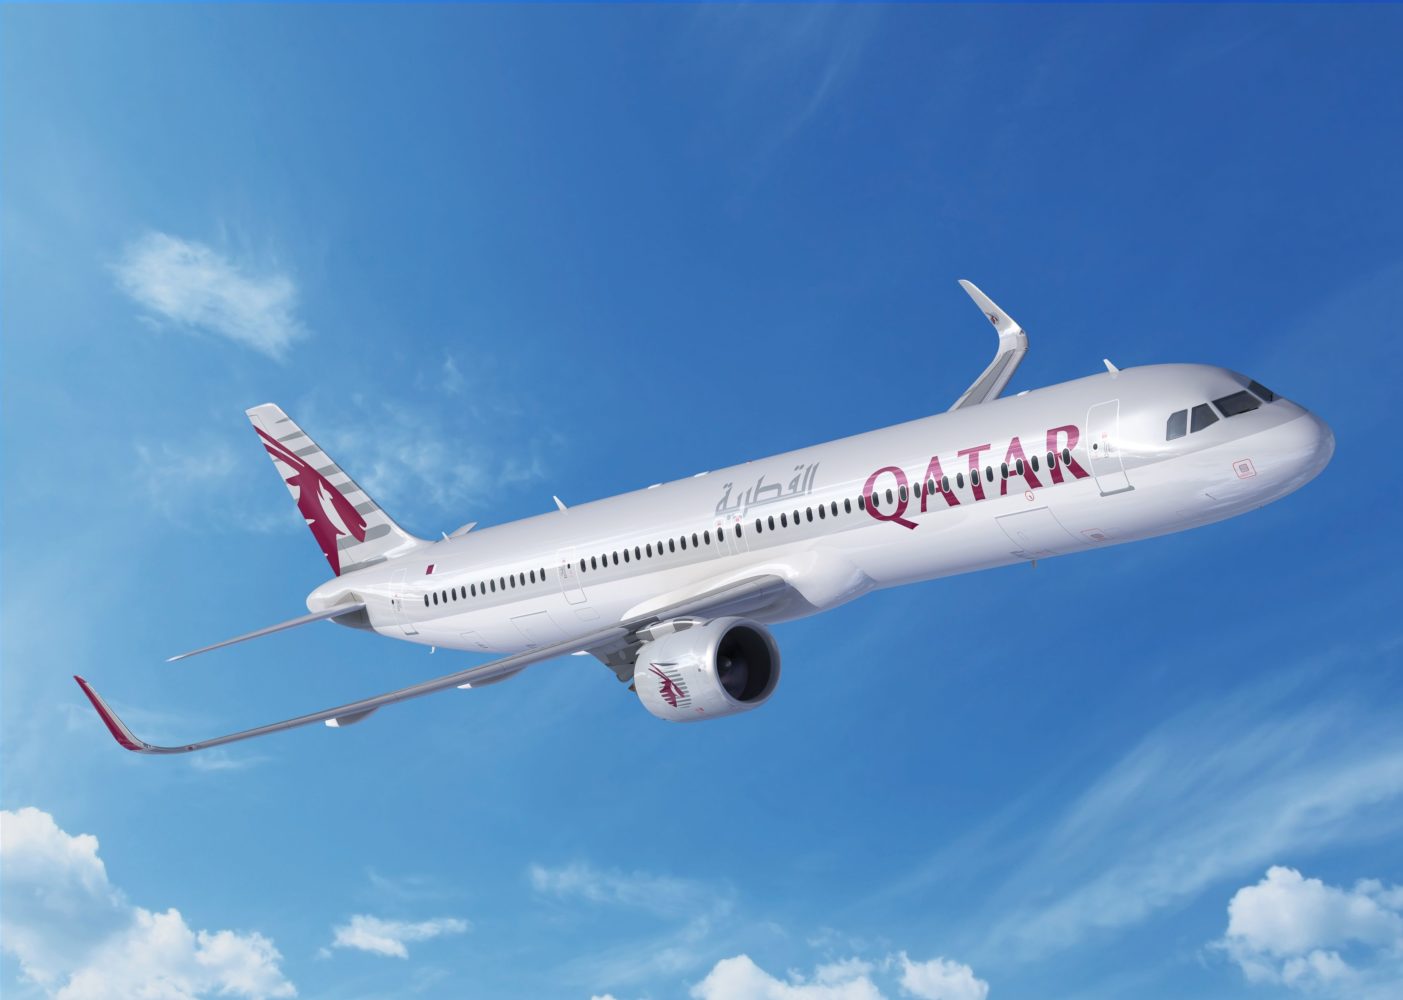 Resultado de imagen para A321neo lr qatar